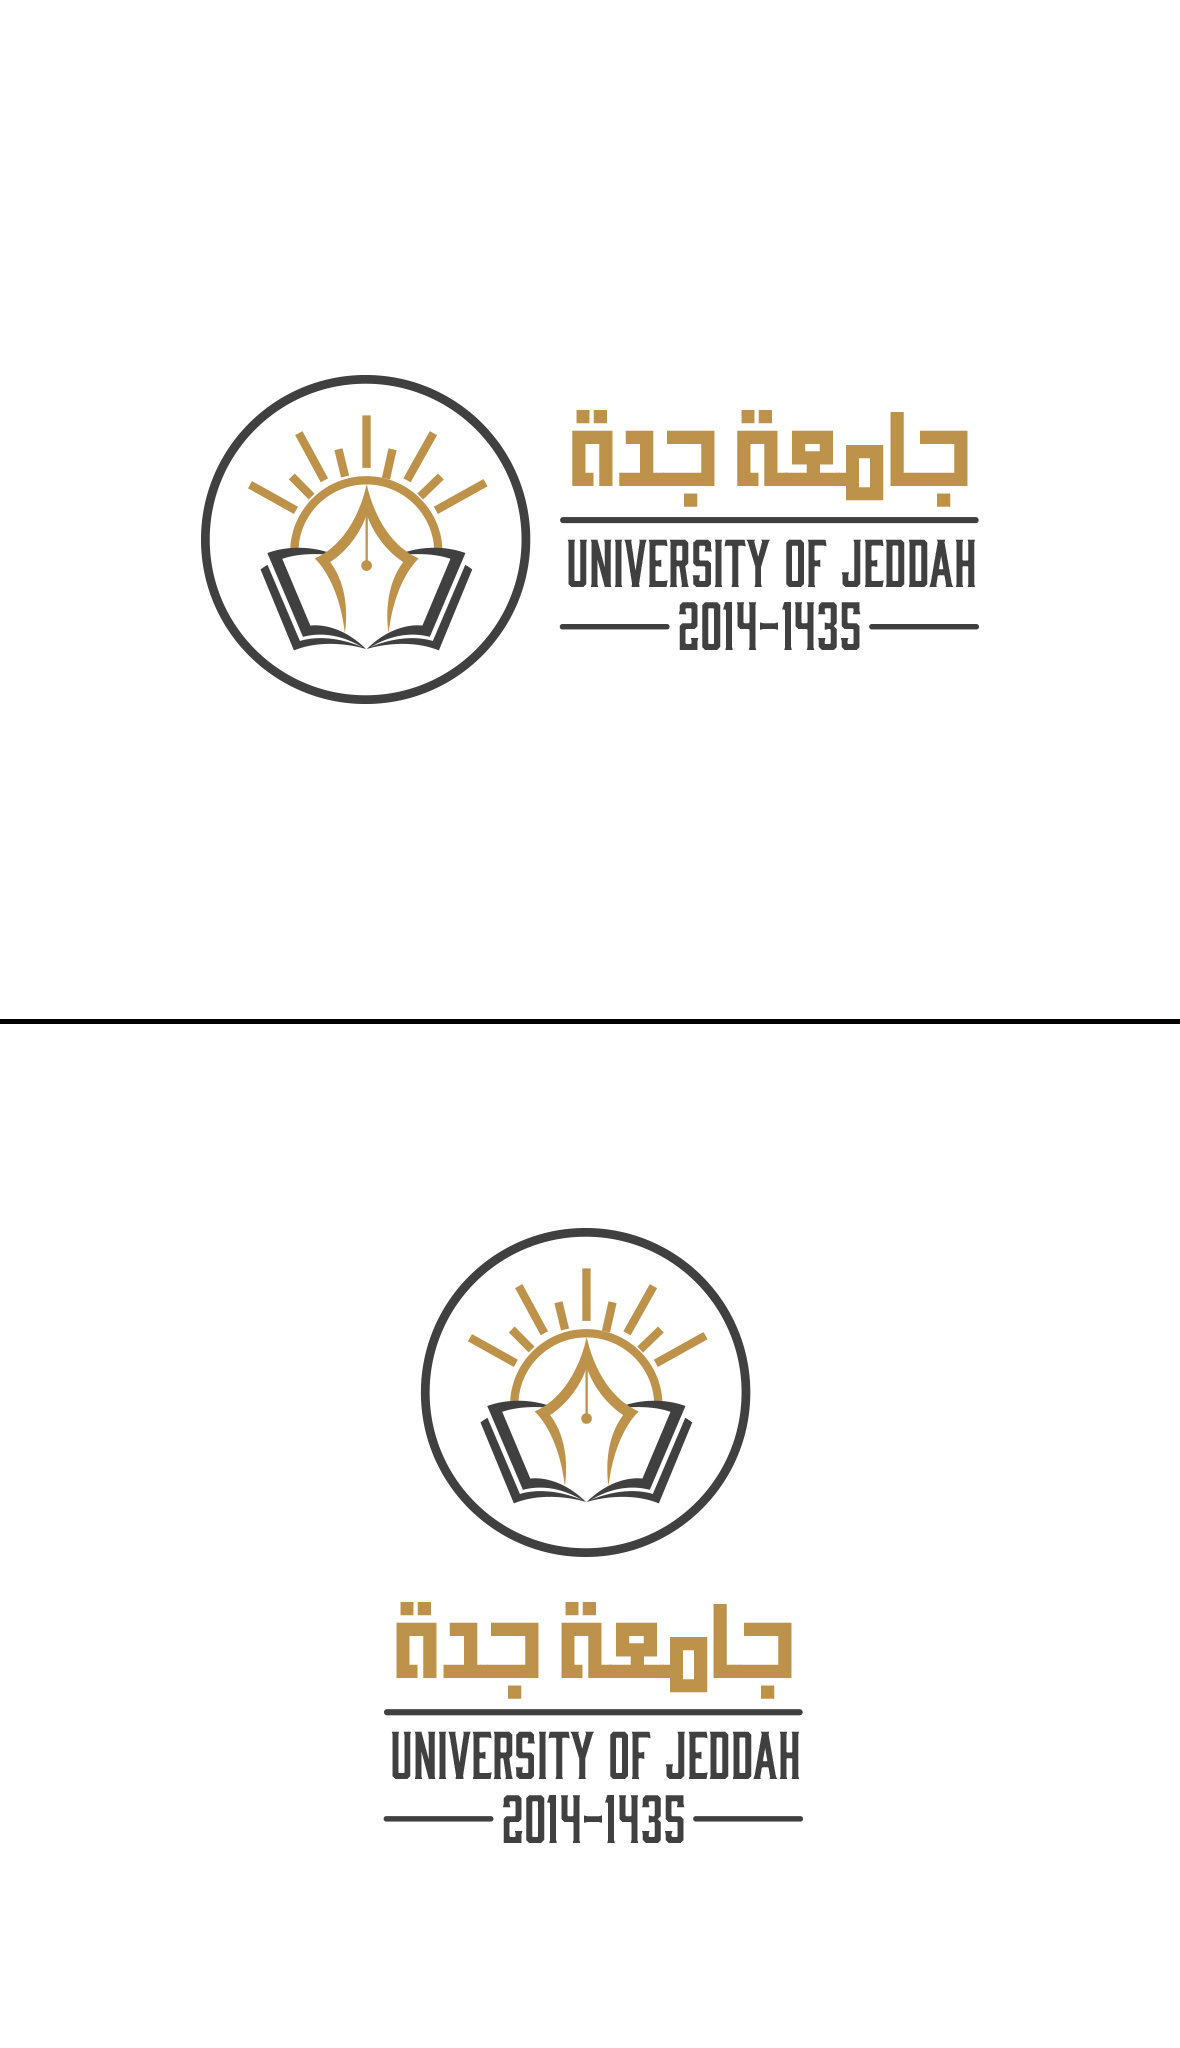 University of Jeddah .logo book pen Sun